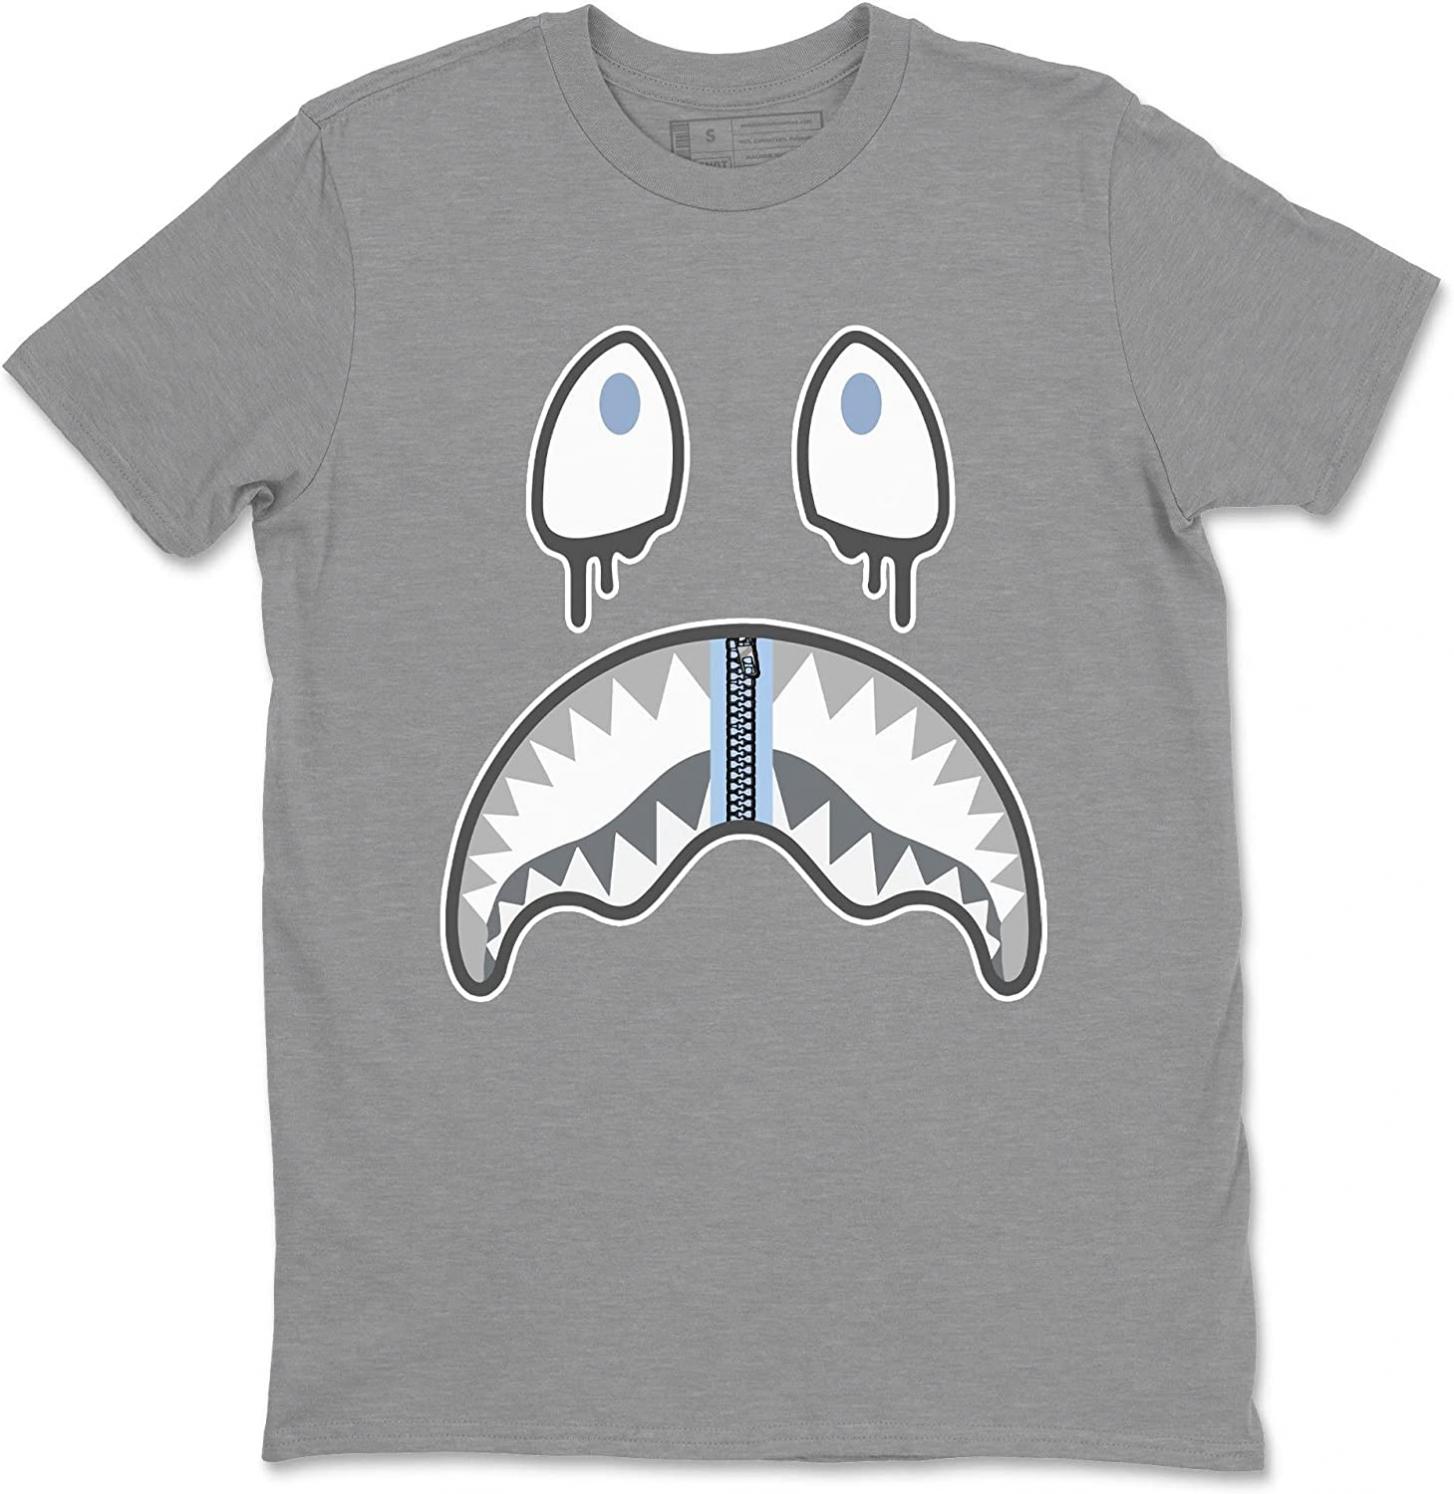 Shark Face 11 Retro Cool Grey Design Sneaker Matching T-Shirt